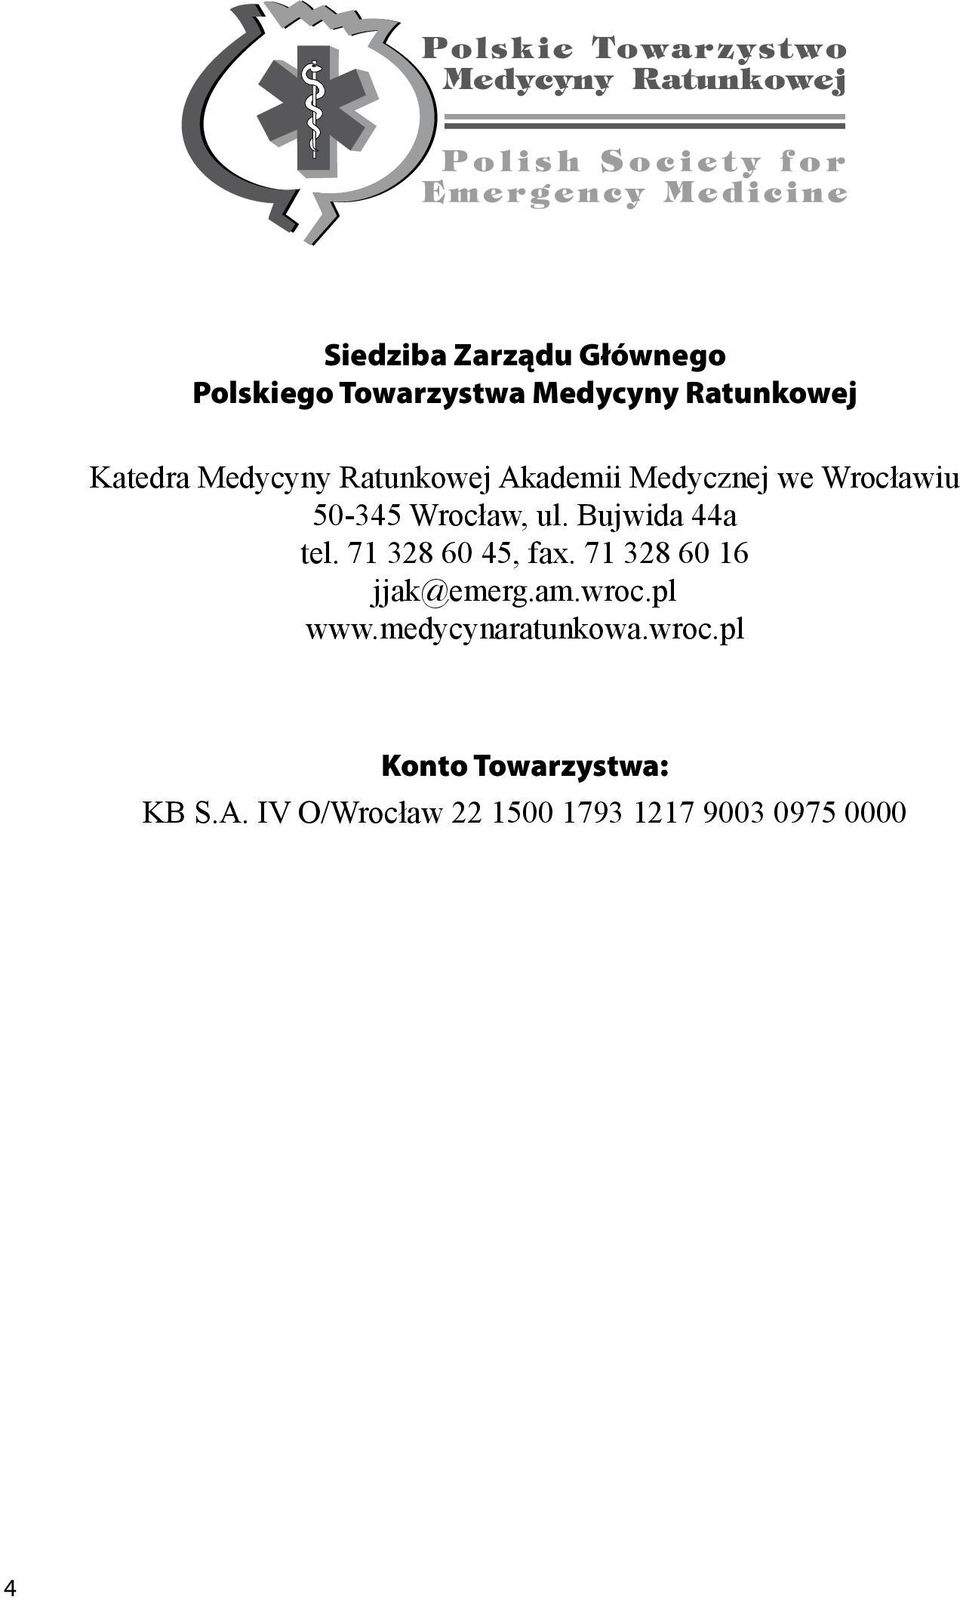 Bujwida 44a tel. 71 328 60 45, fax. 71 328 60 16 jjak@emerg.am.wroc.pl www.